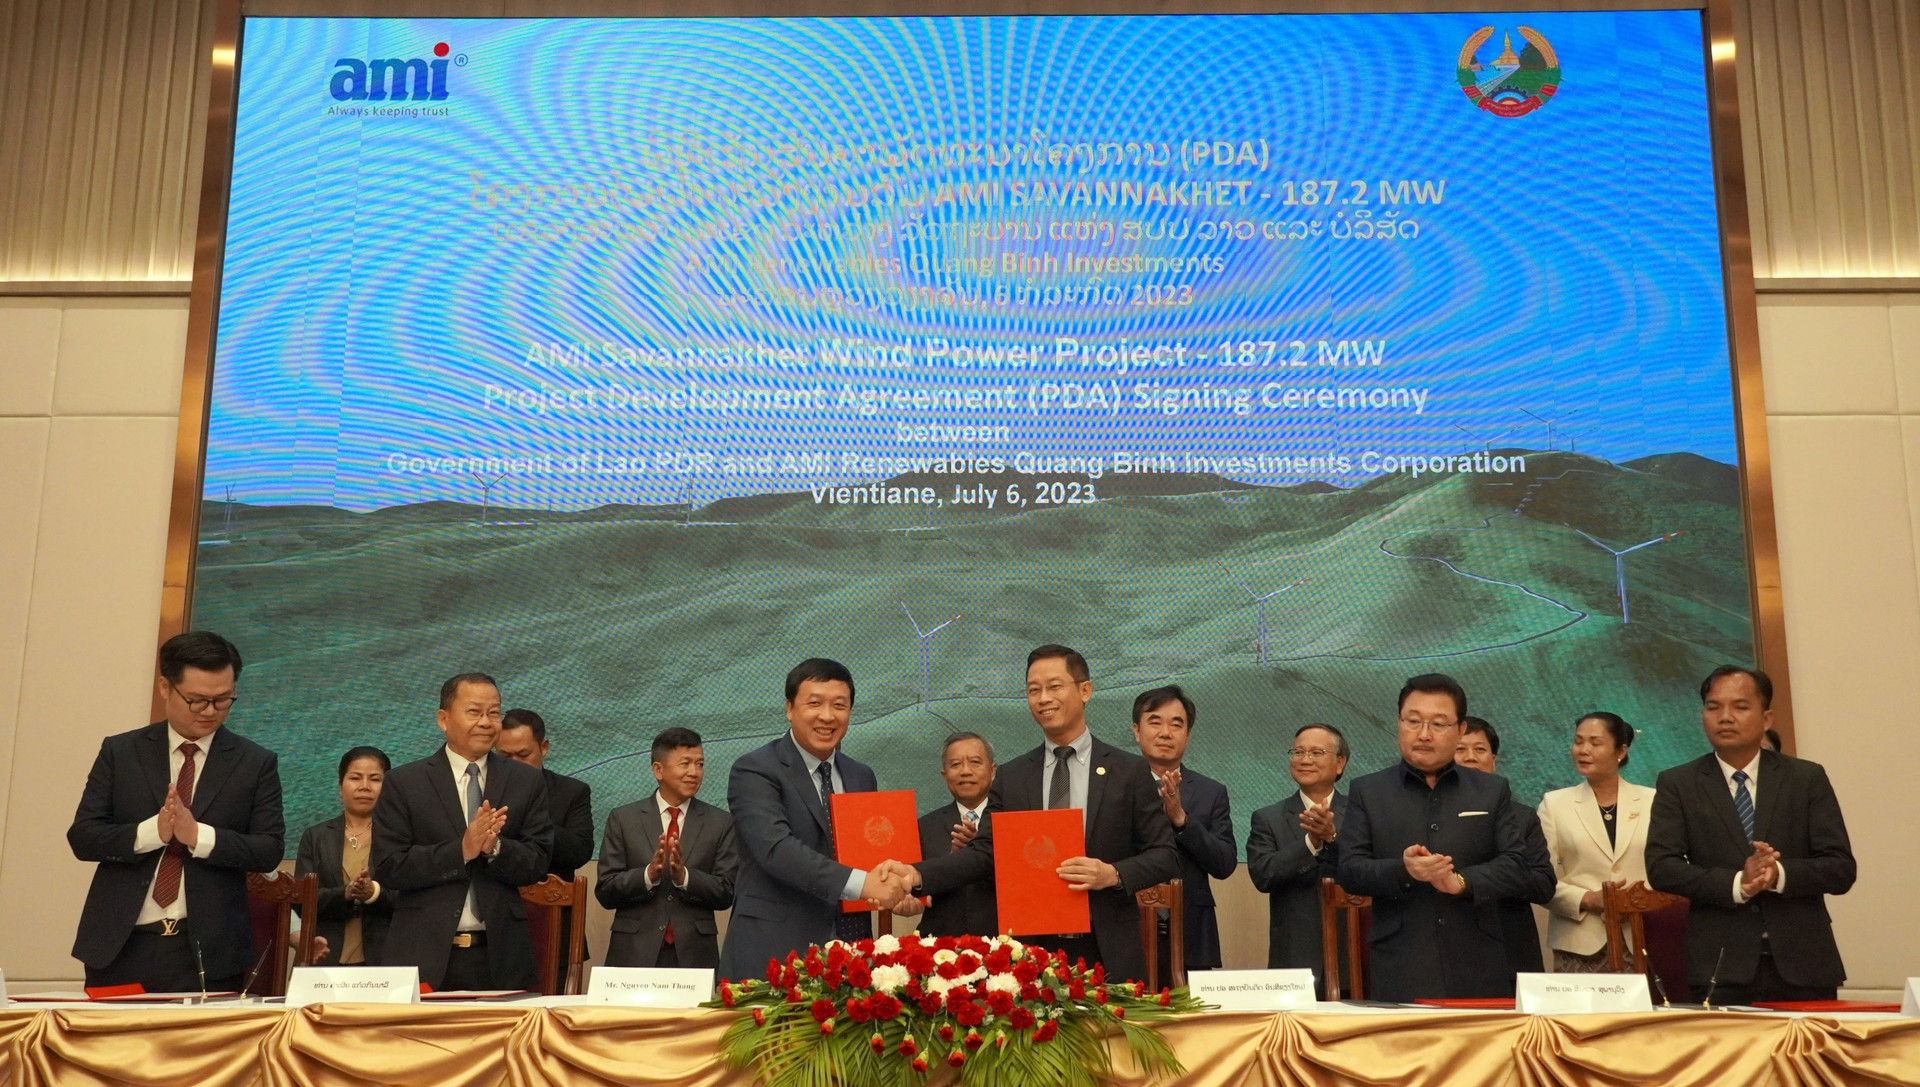 Ông Nguyễn Nam Thắng, Chủ tịch HĐQT công ty AMI Quảng Bình trao đổi biên bản thoả thuận phát triển Dự án với Thứ turowngr Bộ KH&ĐT Lào